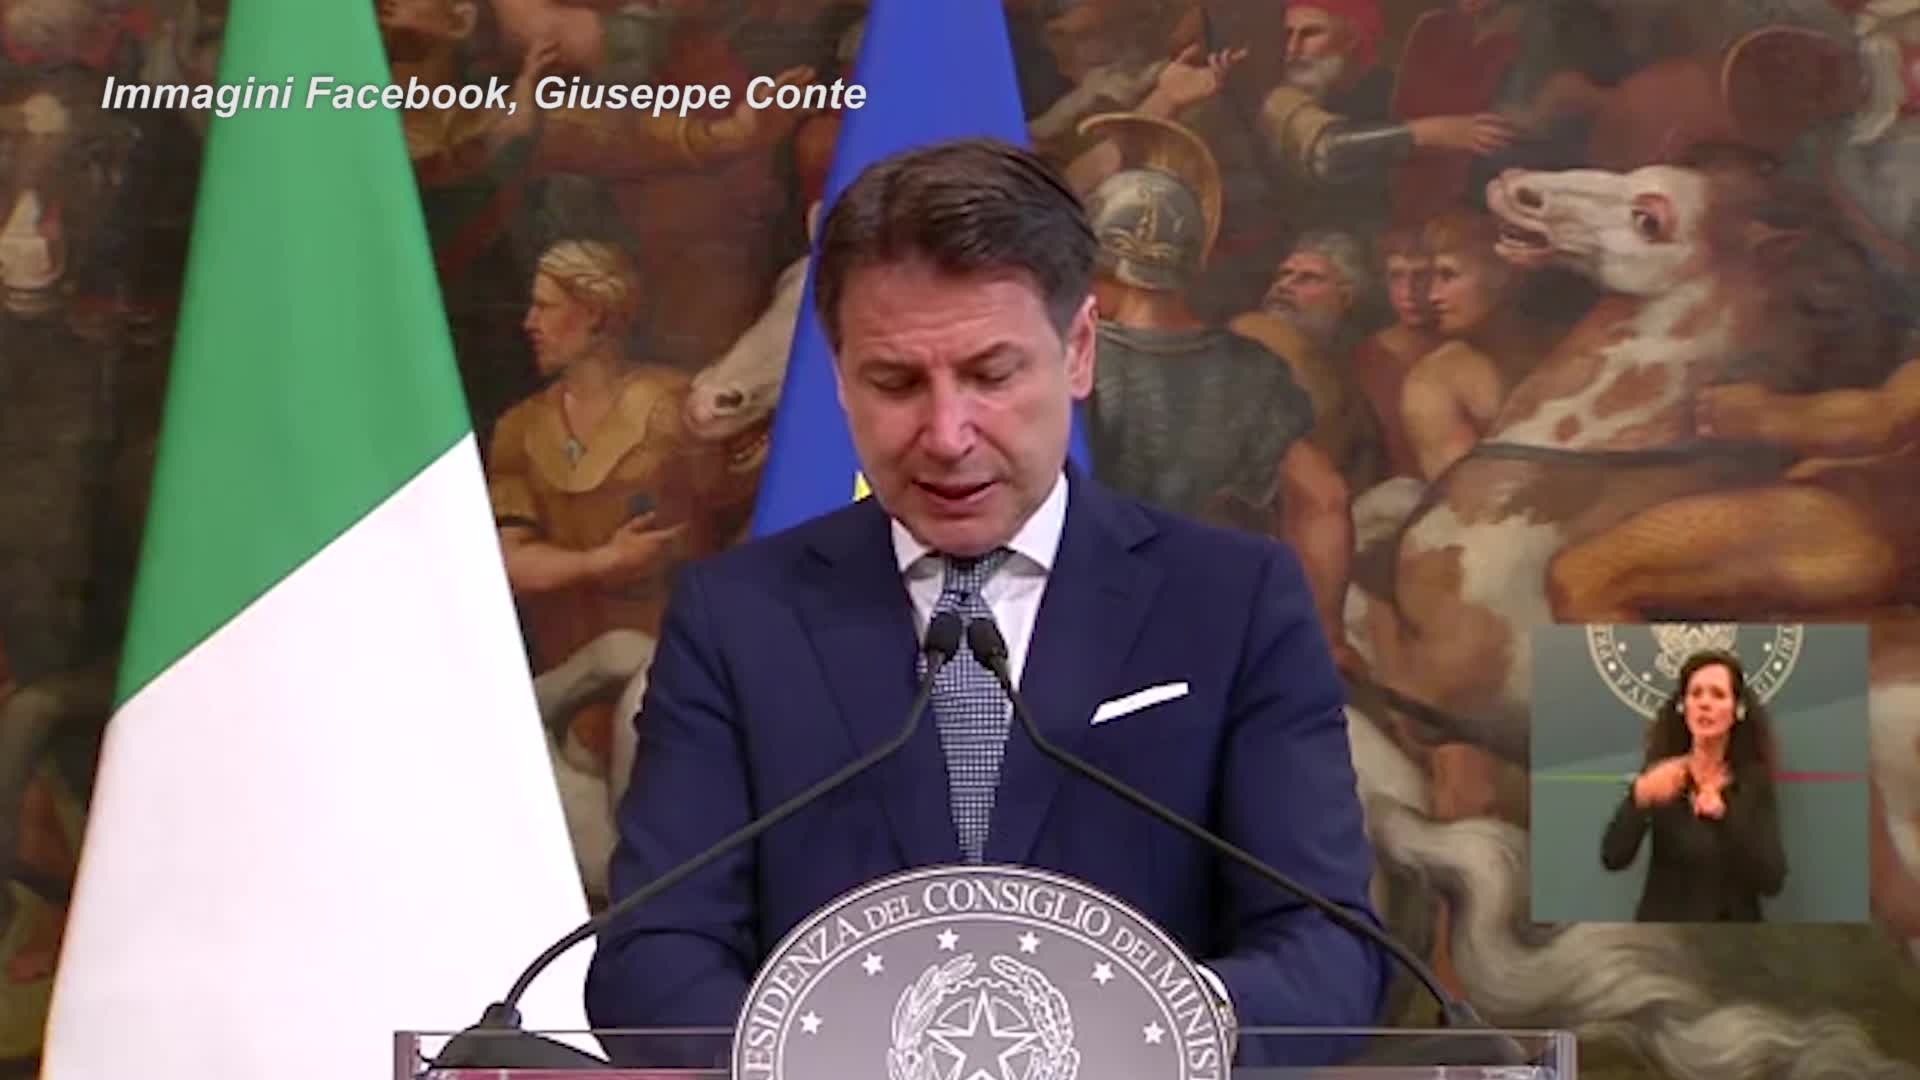 Italia-Svizzera, Conte: "Accordo sui transfrontalieri entro l'anno"